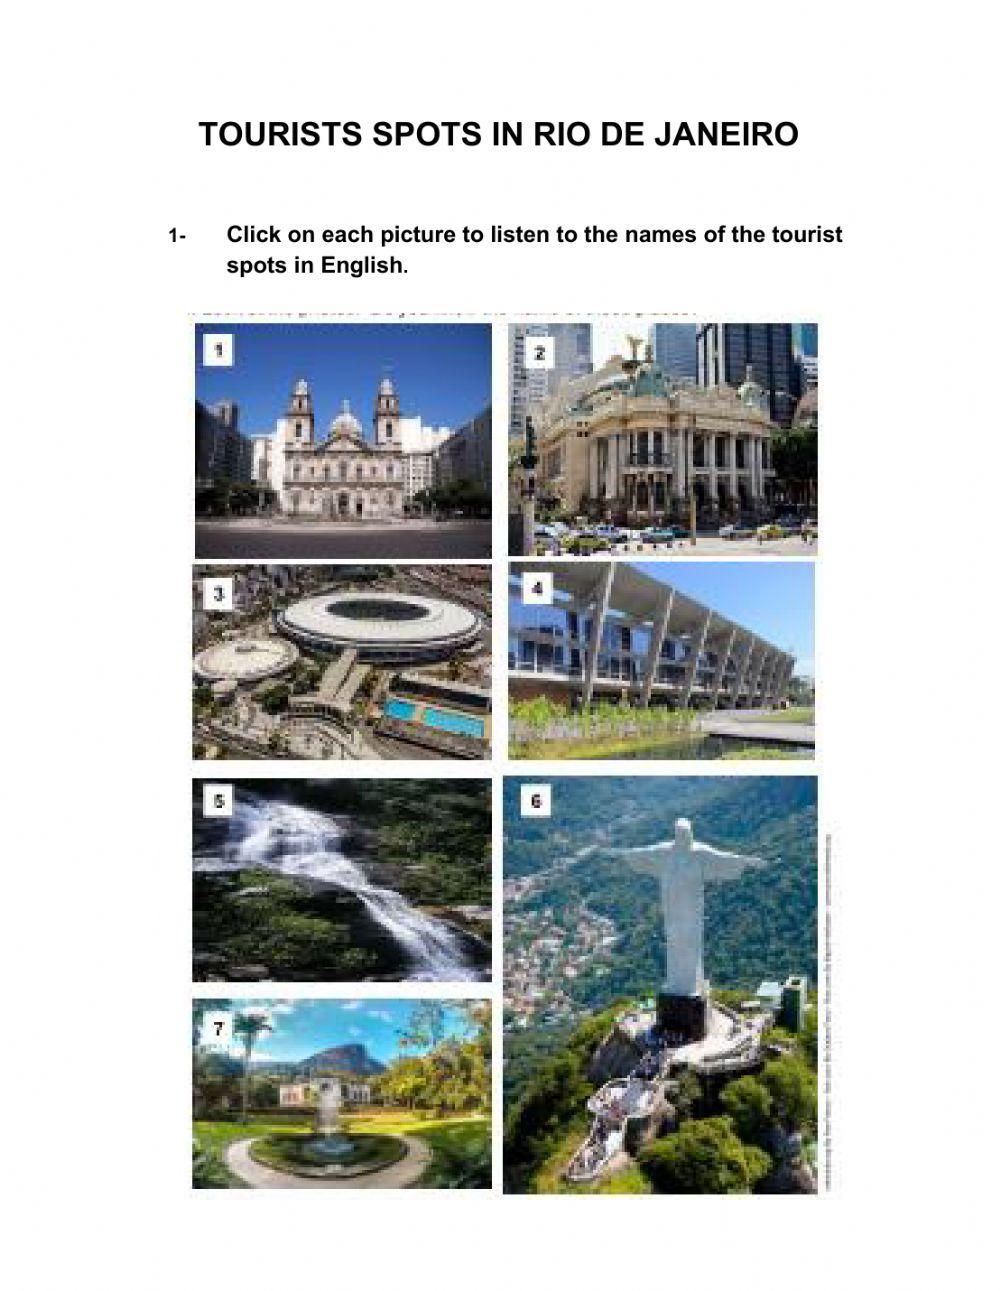 Tourist spots in Brazil